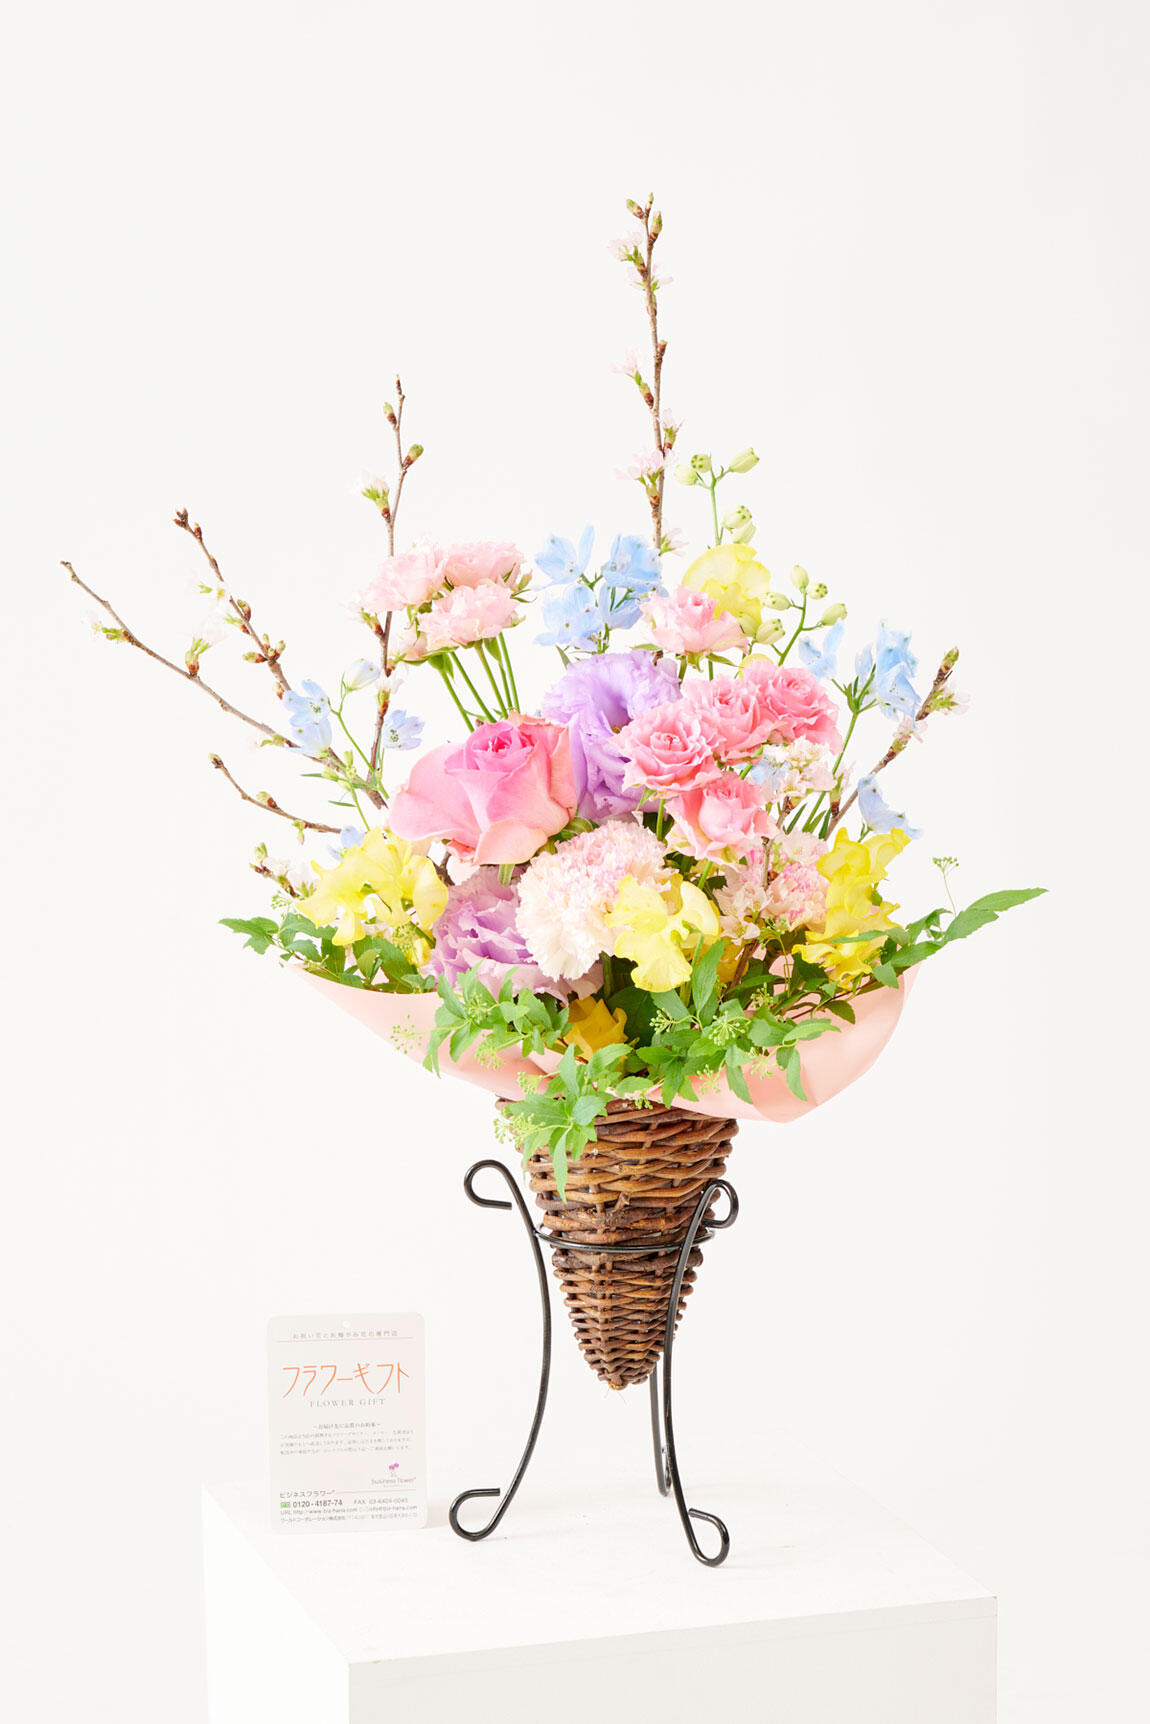 <p>桜を引き立てる色とりどりのお花のミックスデザインです。桜のアレンジメントフラワーは、個展祝いの贈答花としてはもちろん、開店祝い、移転祝い、飲食店などの周年祝いのお花の贈り物におすすめです。</p>